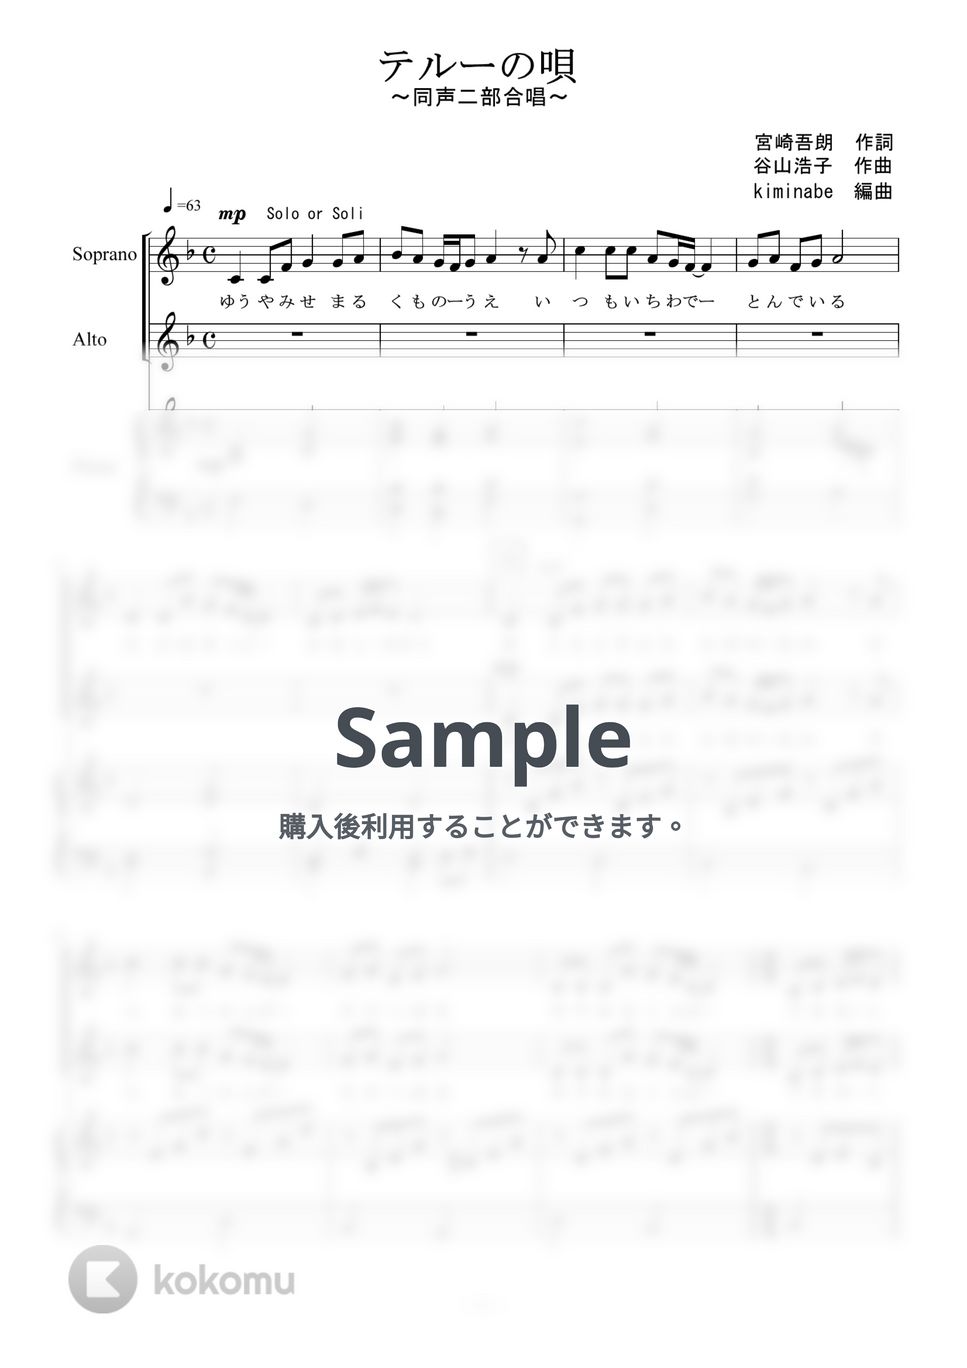 ゲド戦記 - テルーの唄 (クラリネット四重奏) by kiminabe